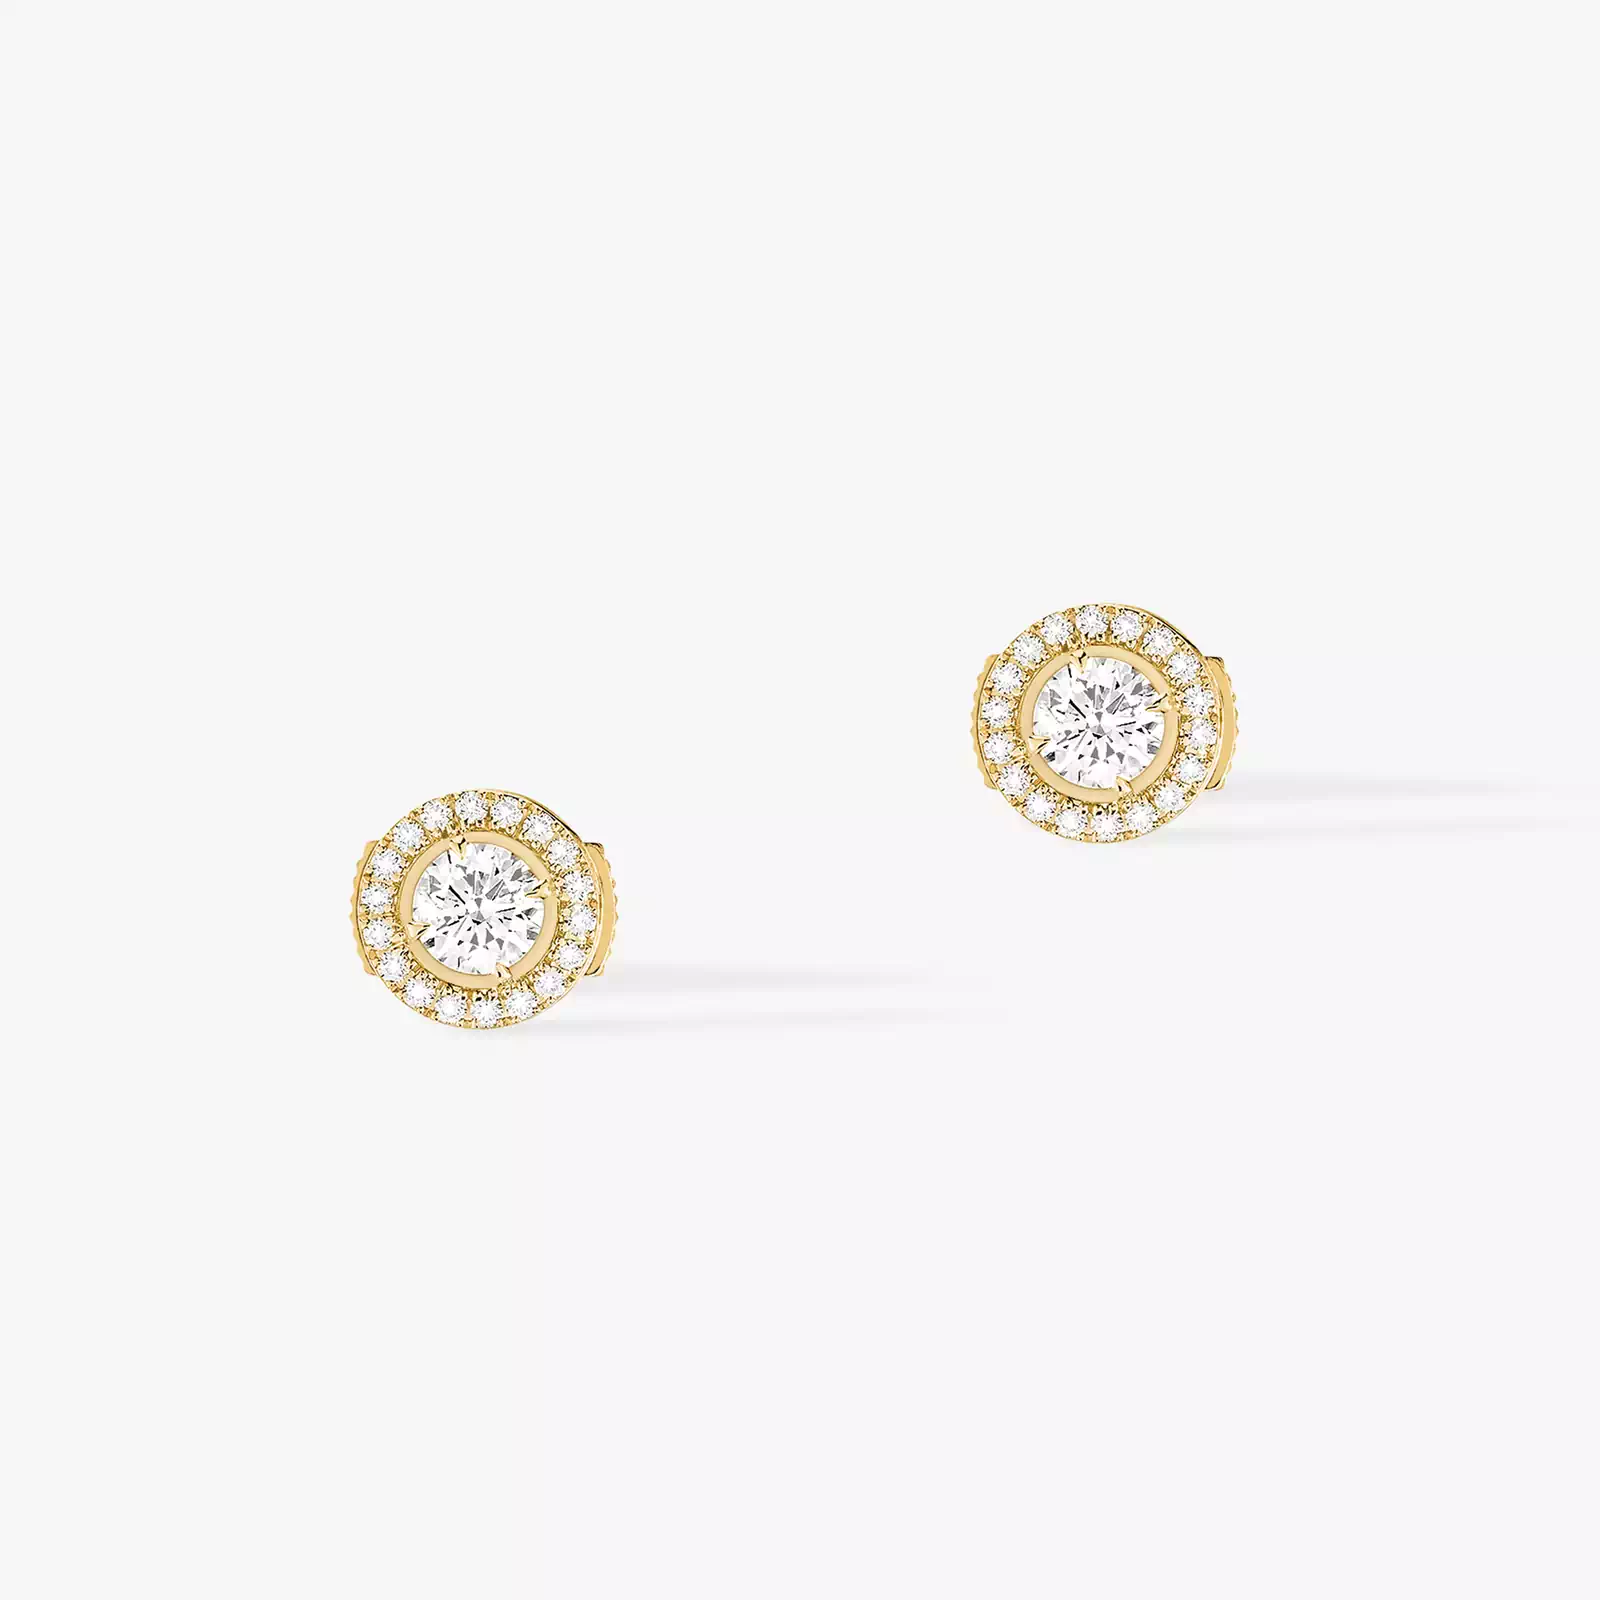 Boucles d'oreilles Femme Or Jaune Diamant Joy diamants ronds 2x0,25ct 04445-YG